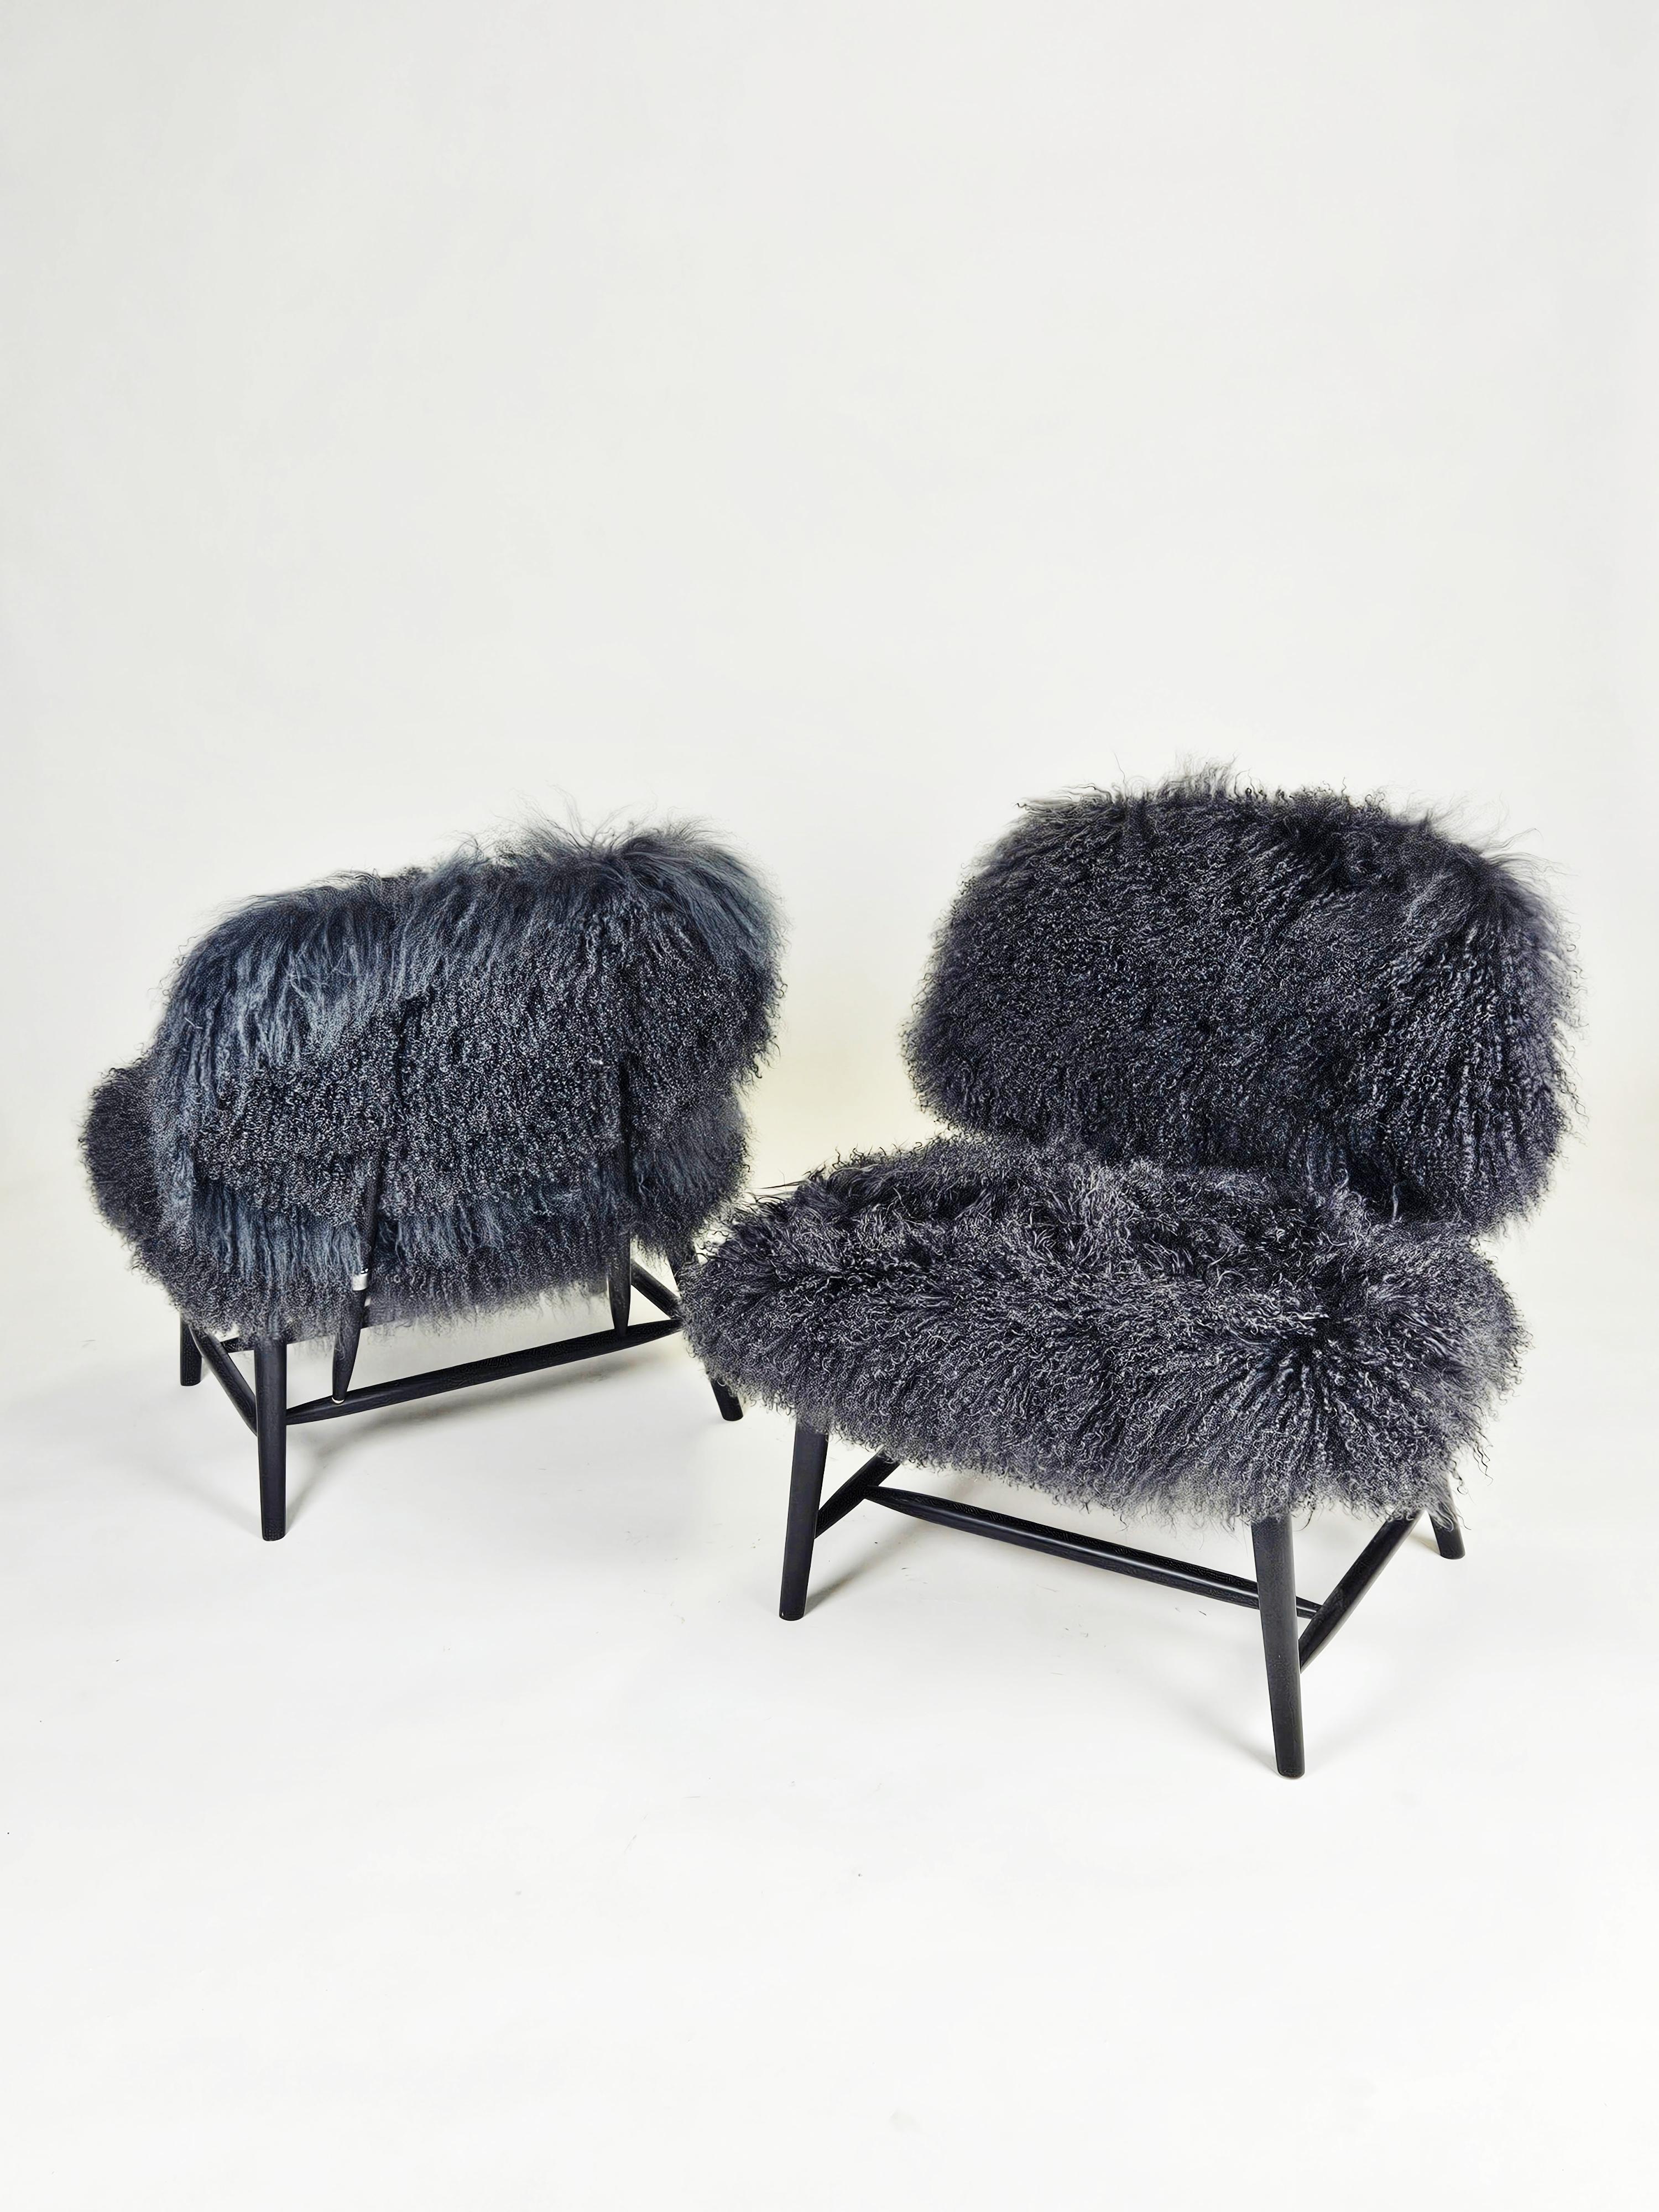 Scandinavian Modern Scandinavian modern 'Teve' chairs by Alf Svensson for Bra Bohag, Sweden, 1950s For Sale